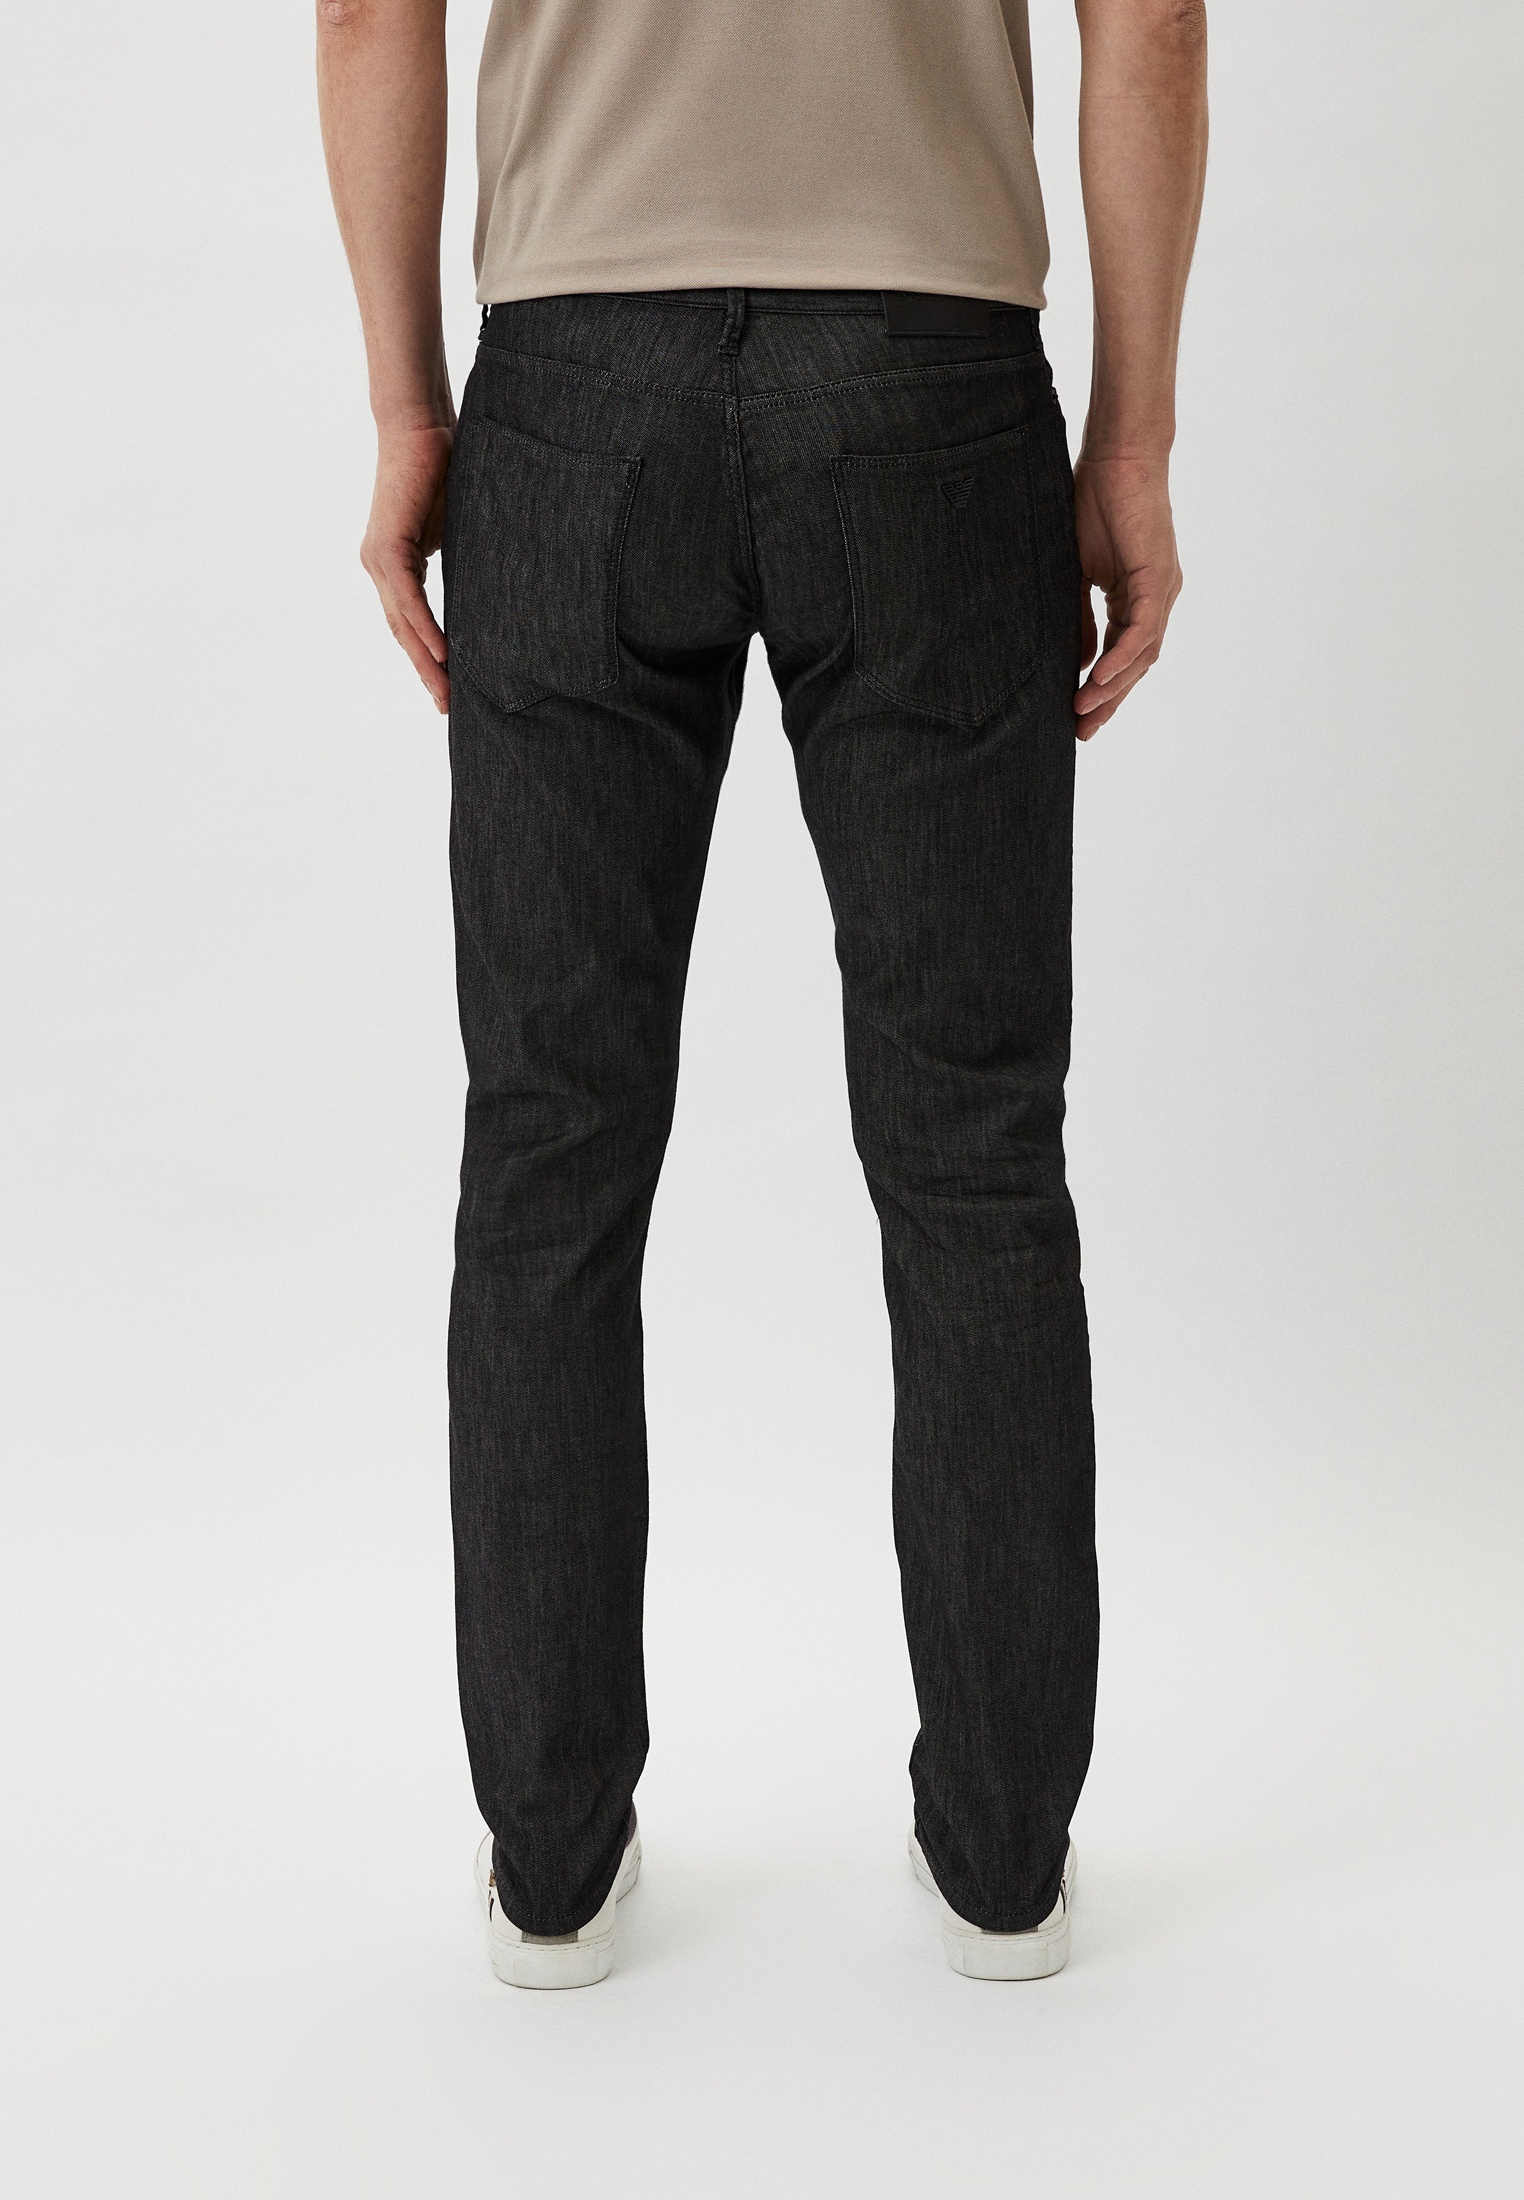 Мужские зауженные джинсы Emporio Armani (Эмпорио Армани) 8N1J06 1D85Z: изображение 3